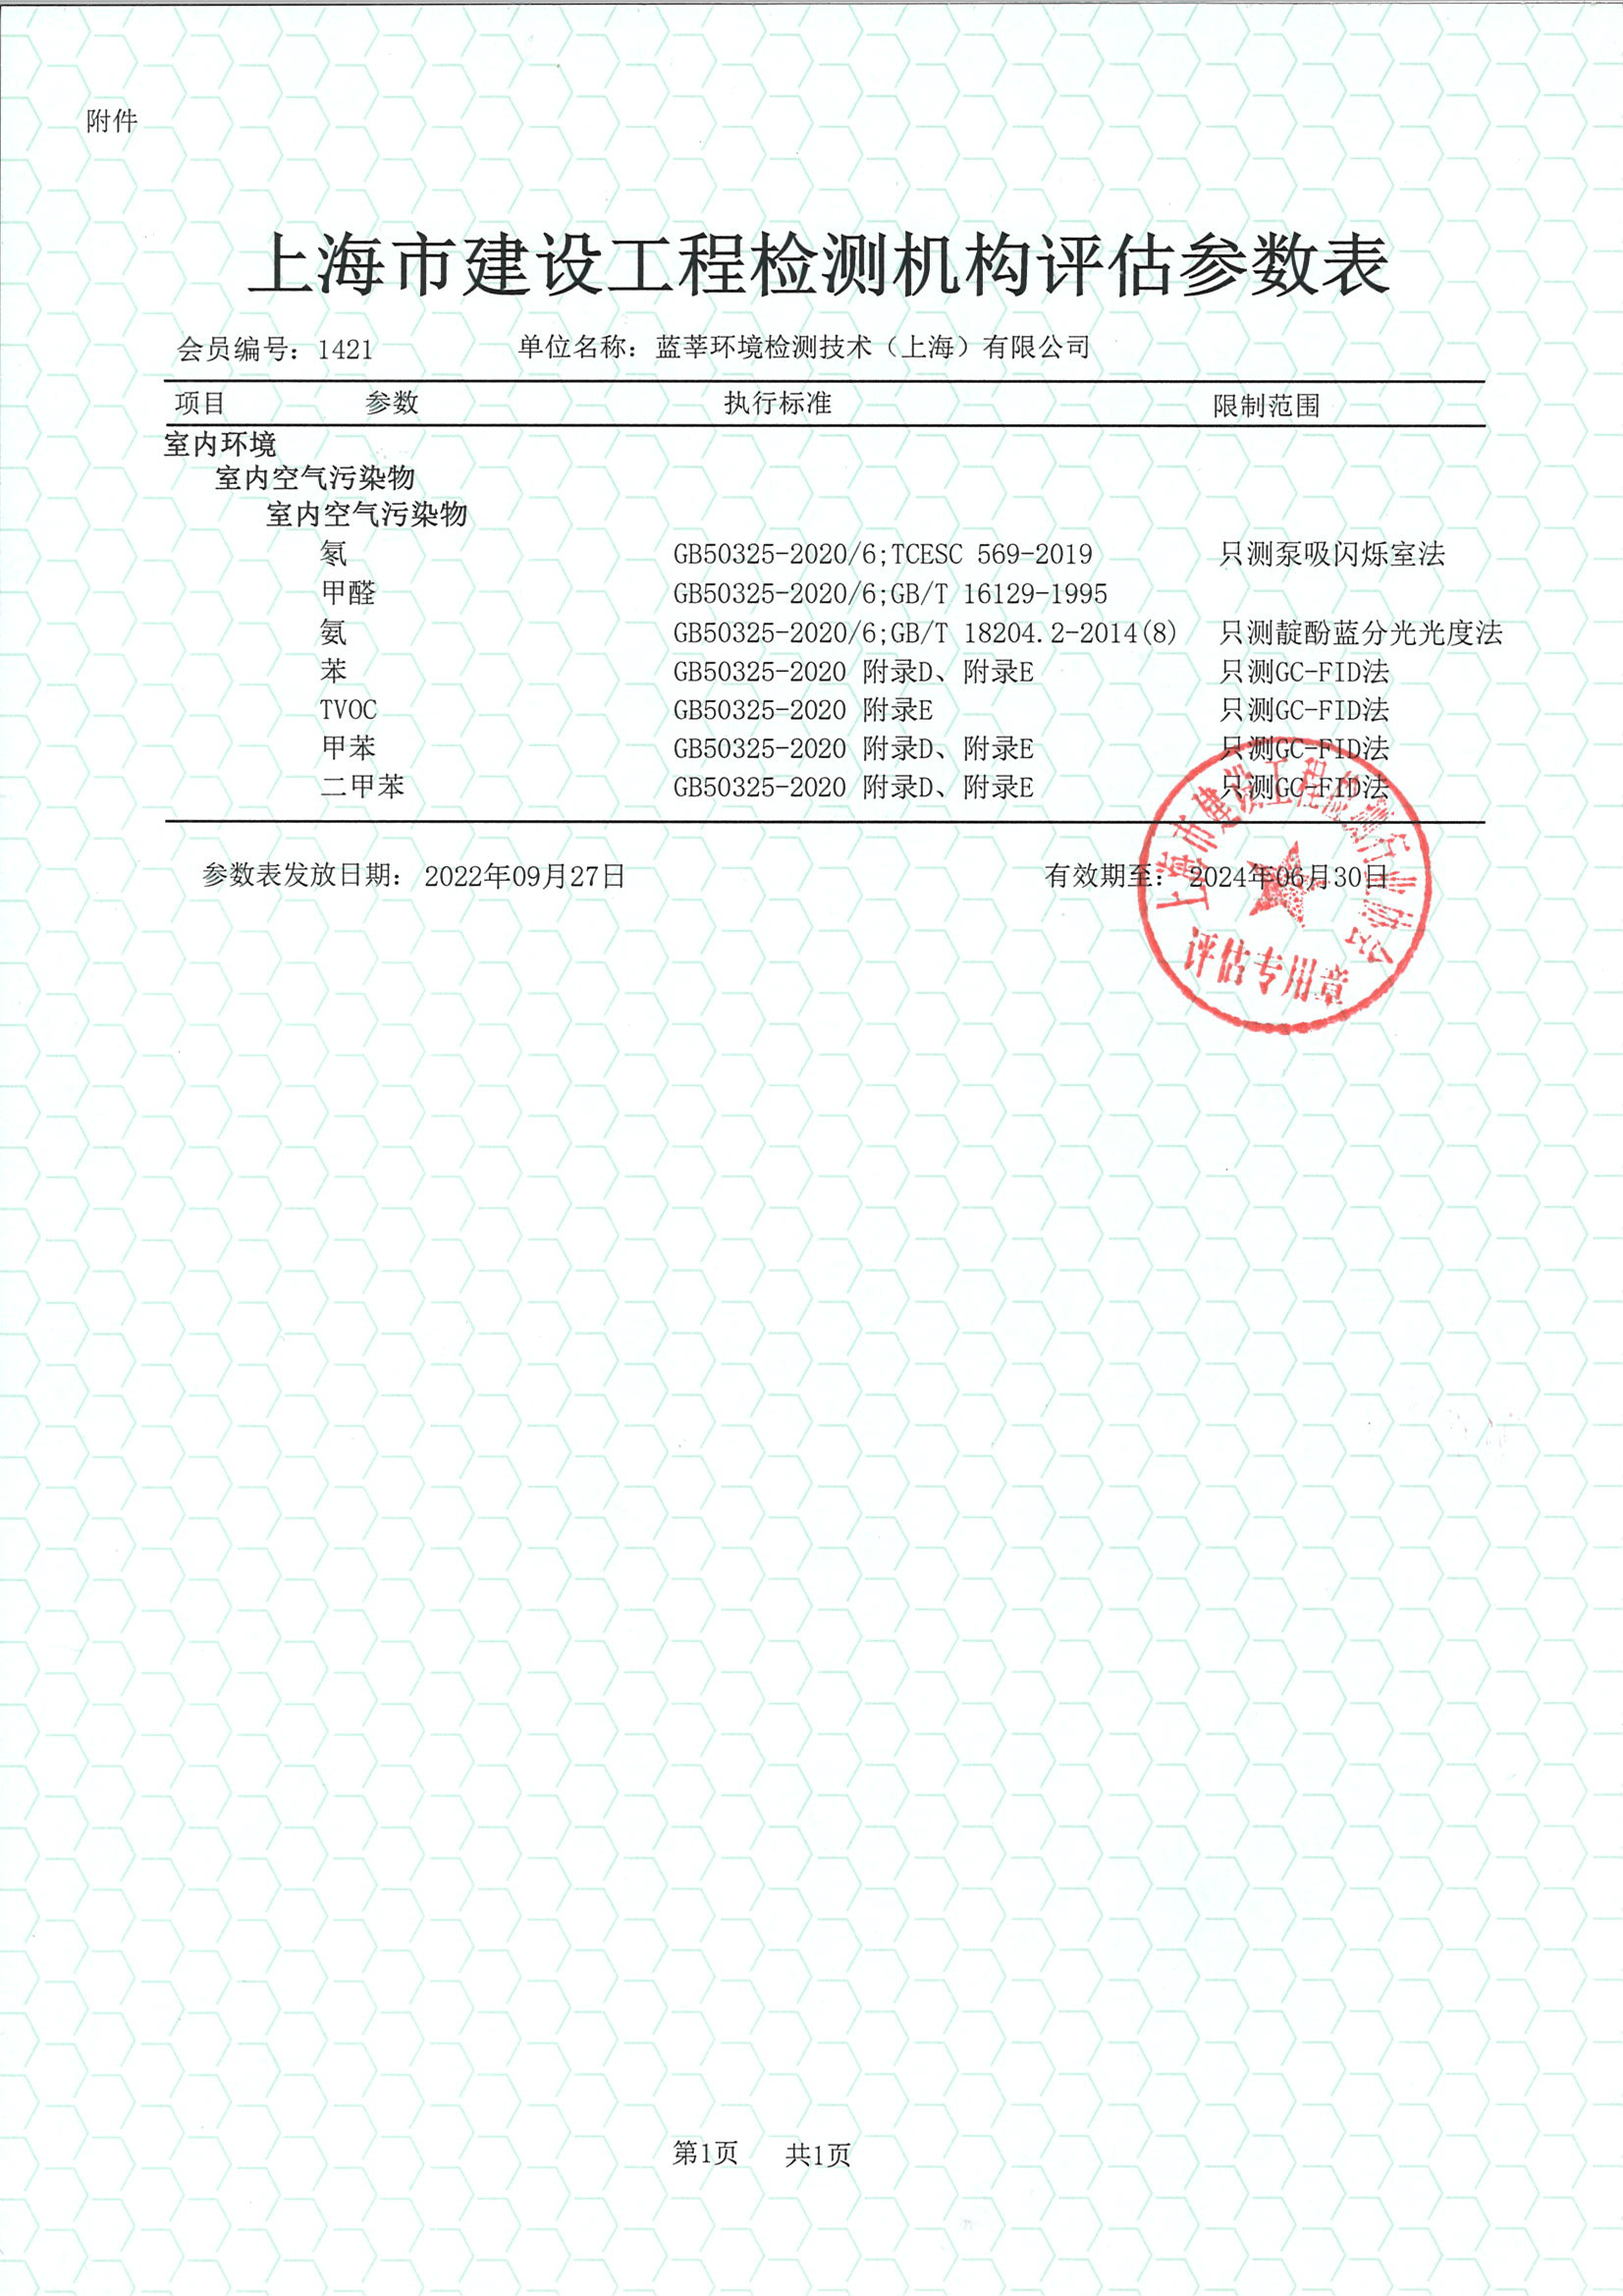 上海市建设工程检测机构评价参数表